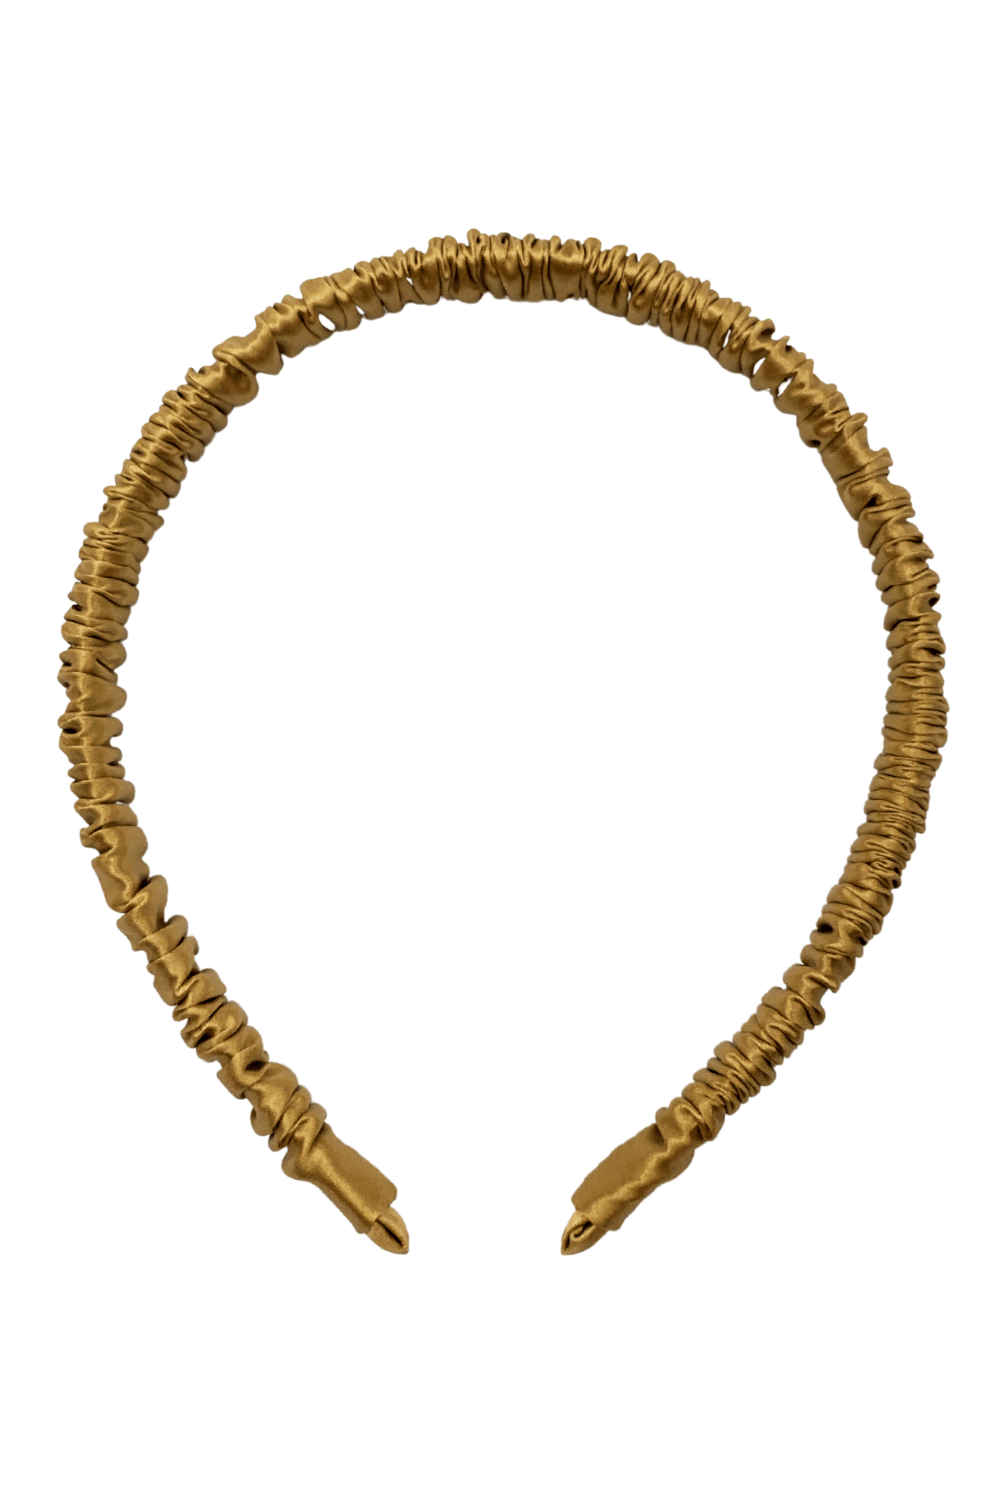 Silk Headband (Thin) - Gold - BASK ™